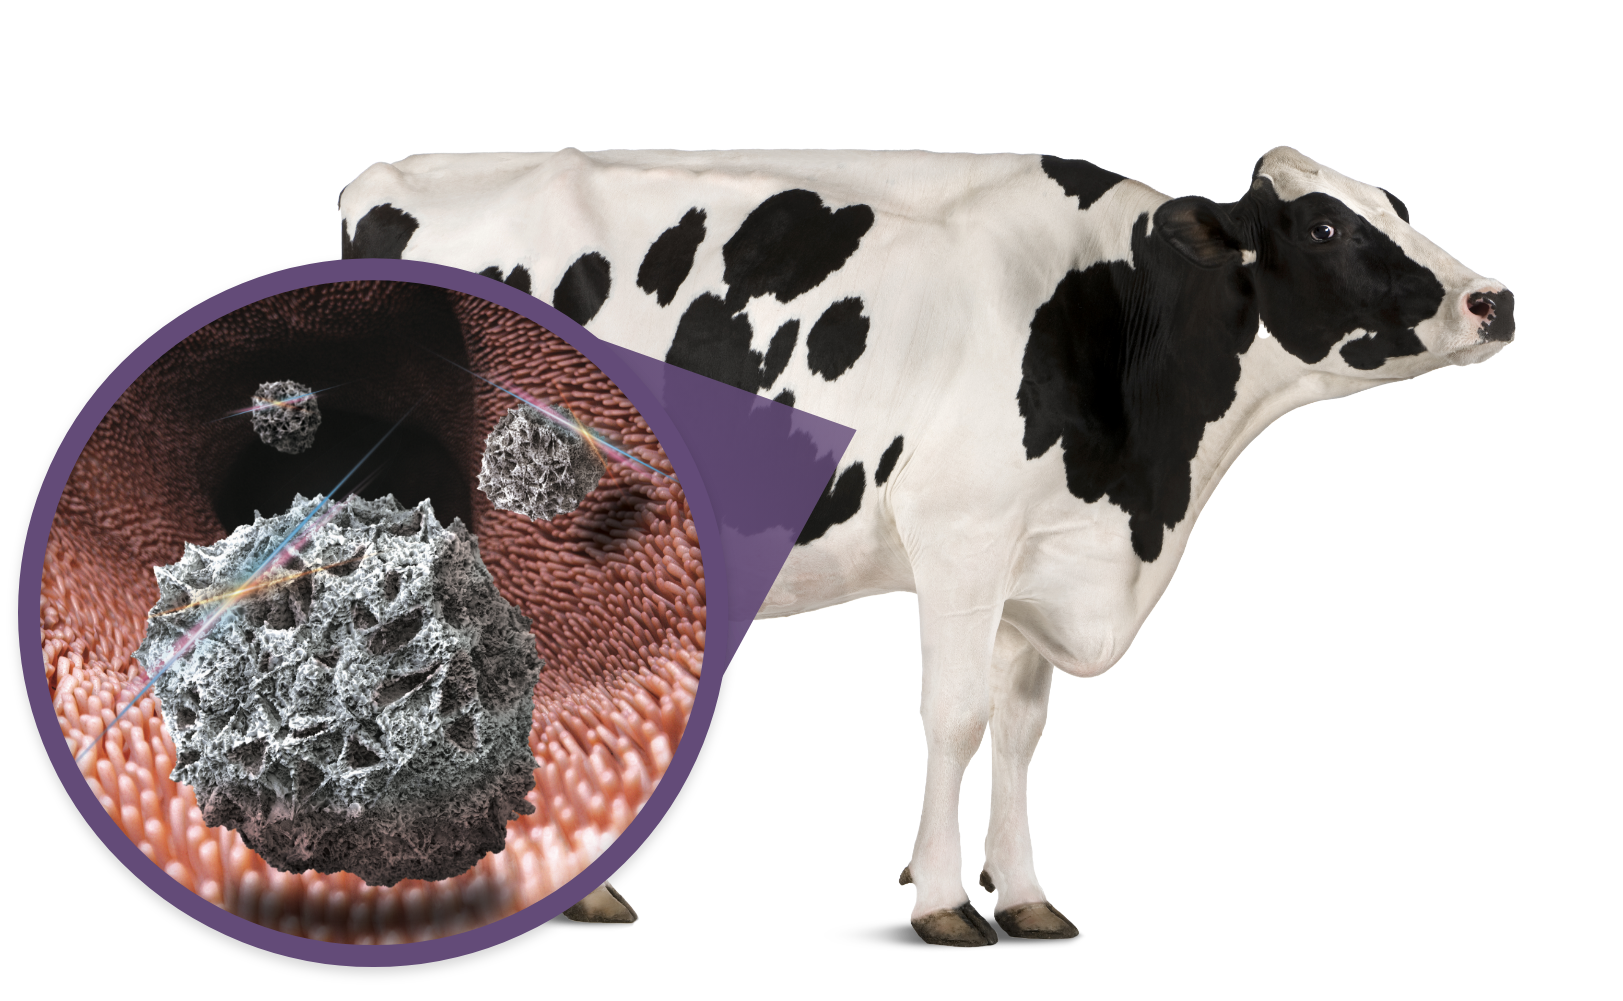 乳牛一侧的紫色肠子呼之欲出。